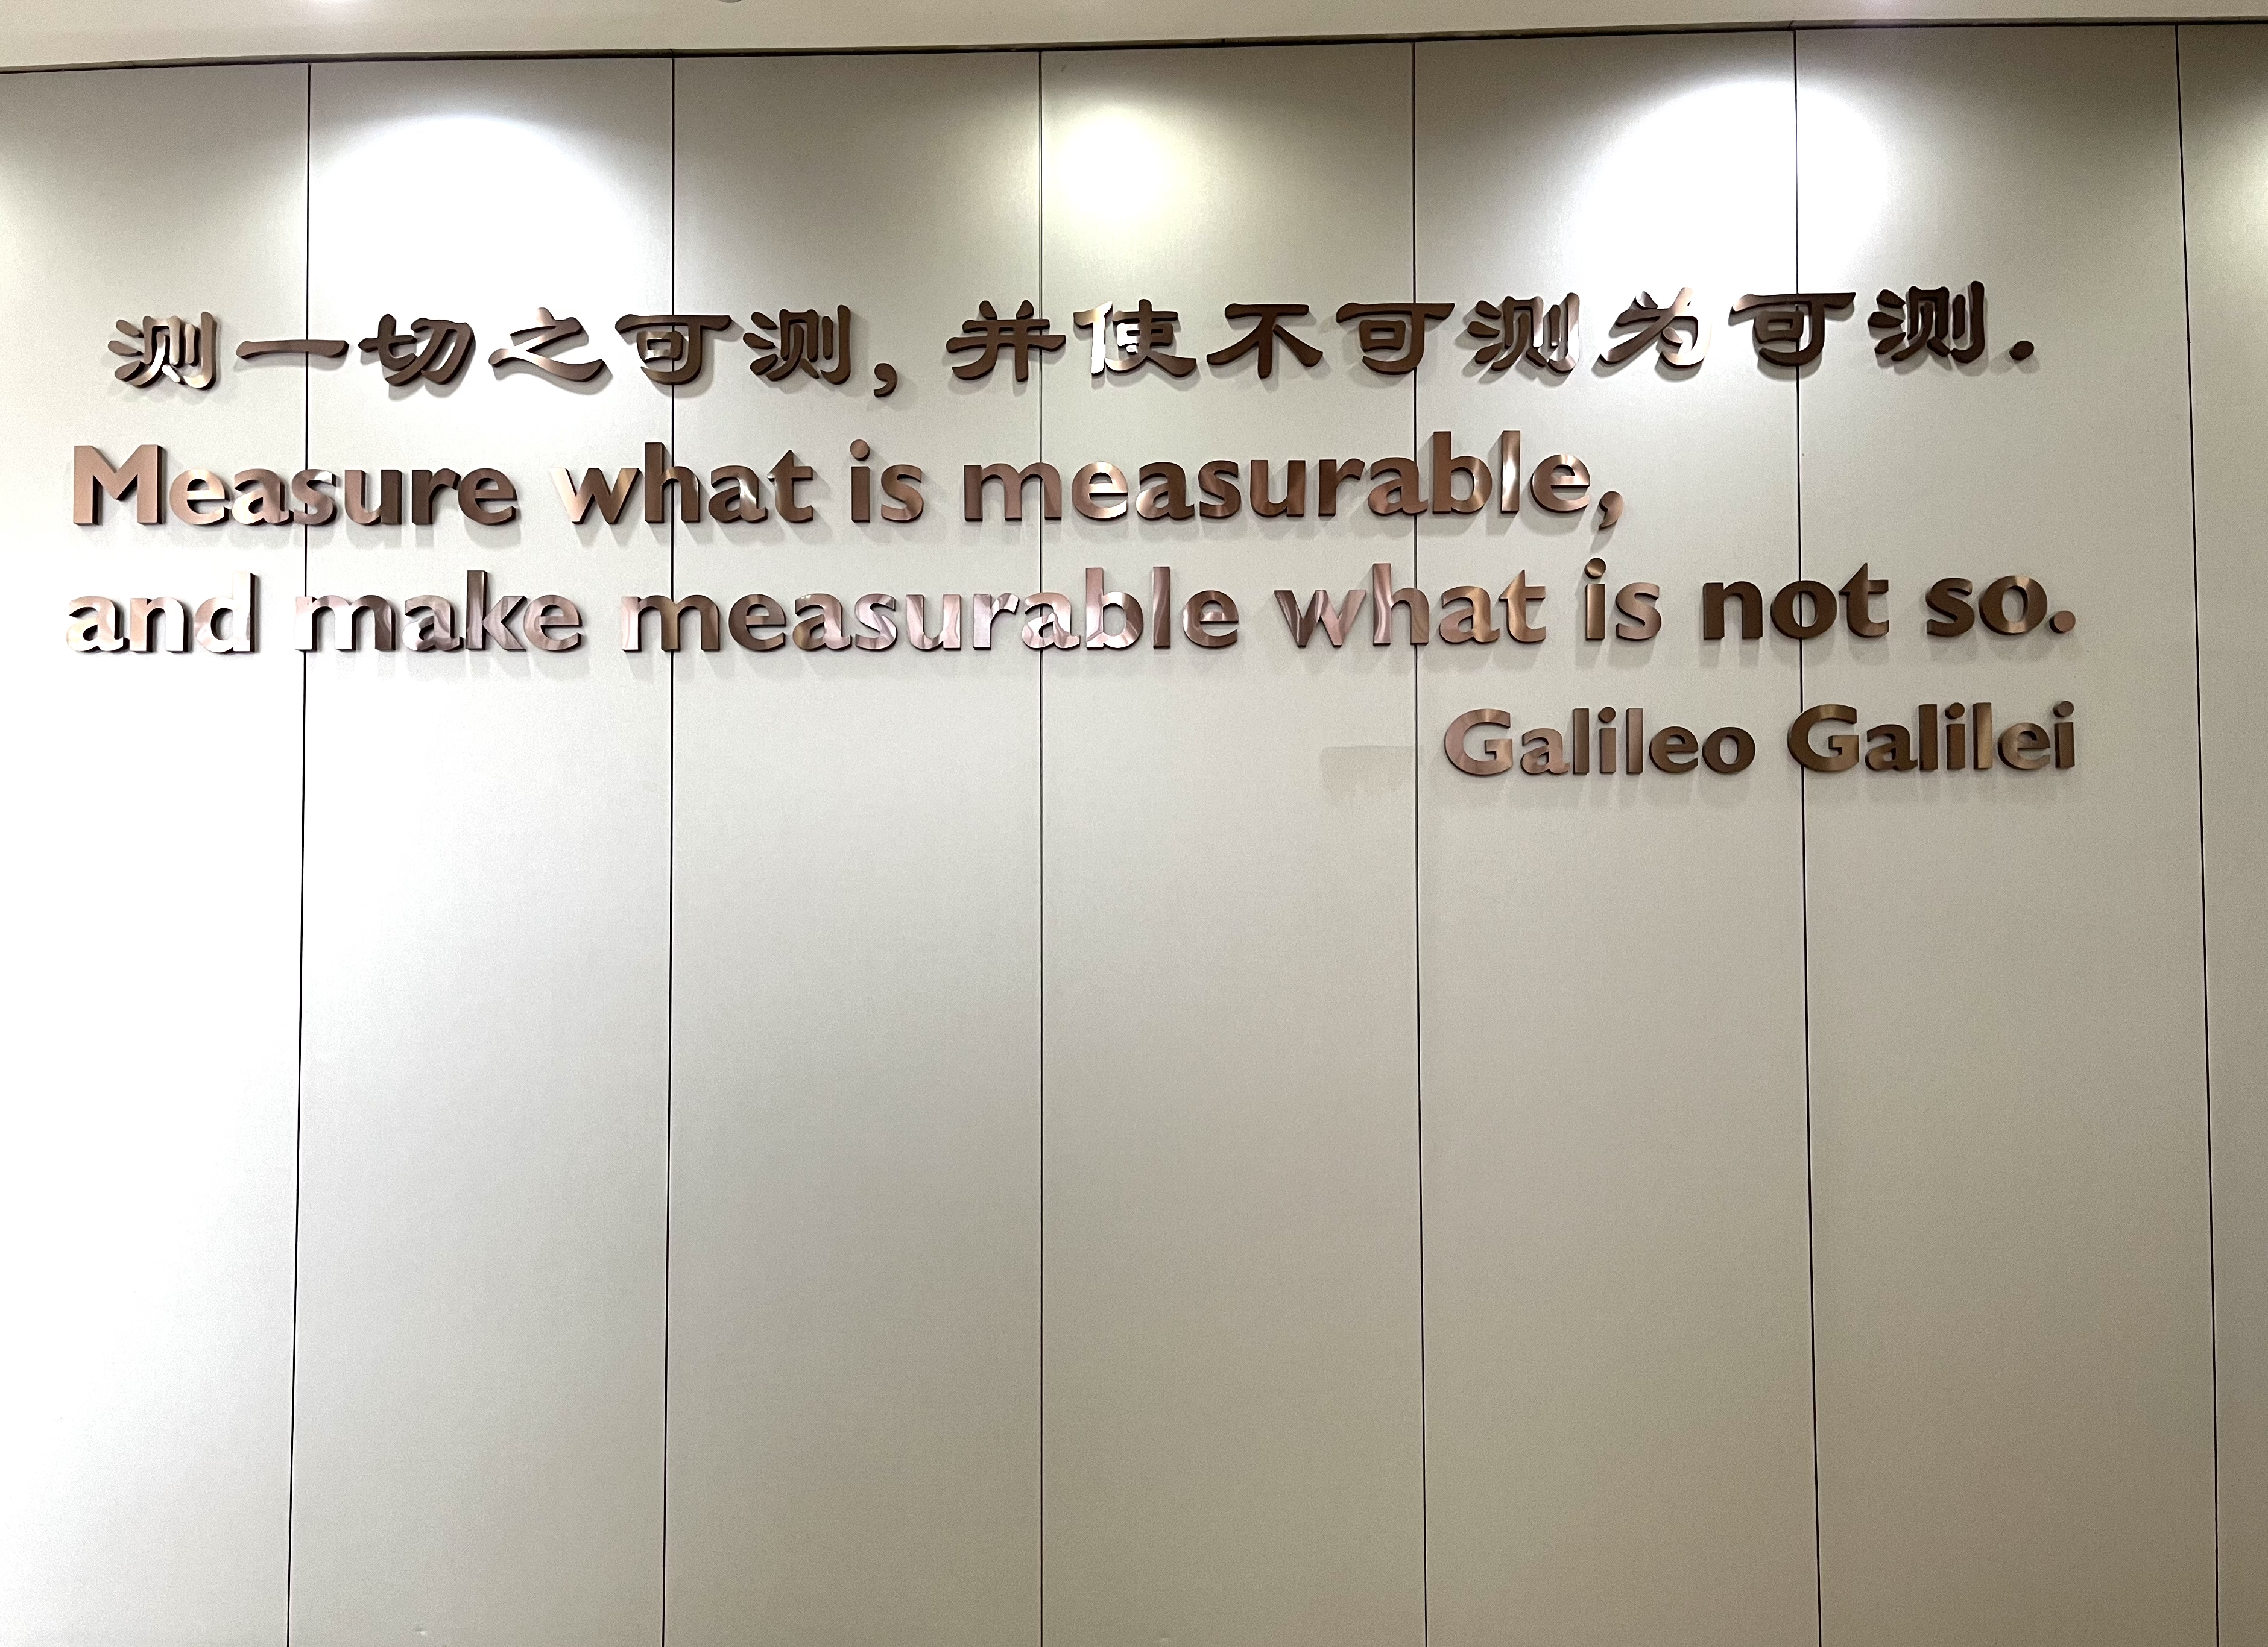 复旦大学人类表型组研究院墙上标语   澎湃新闻记者 张慧 图